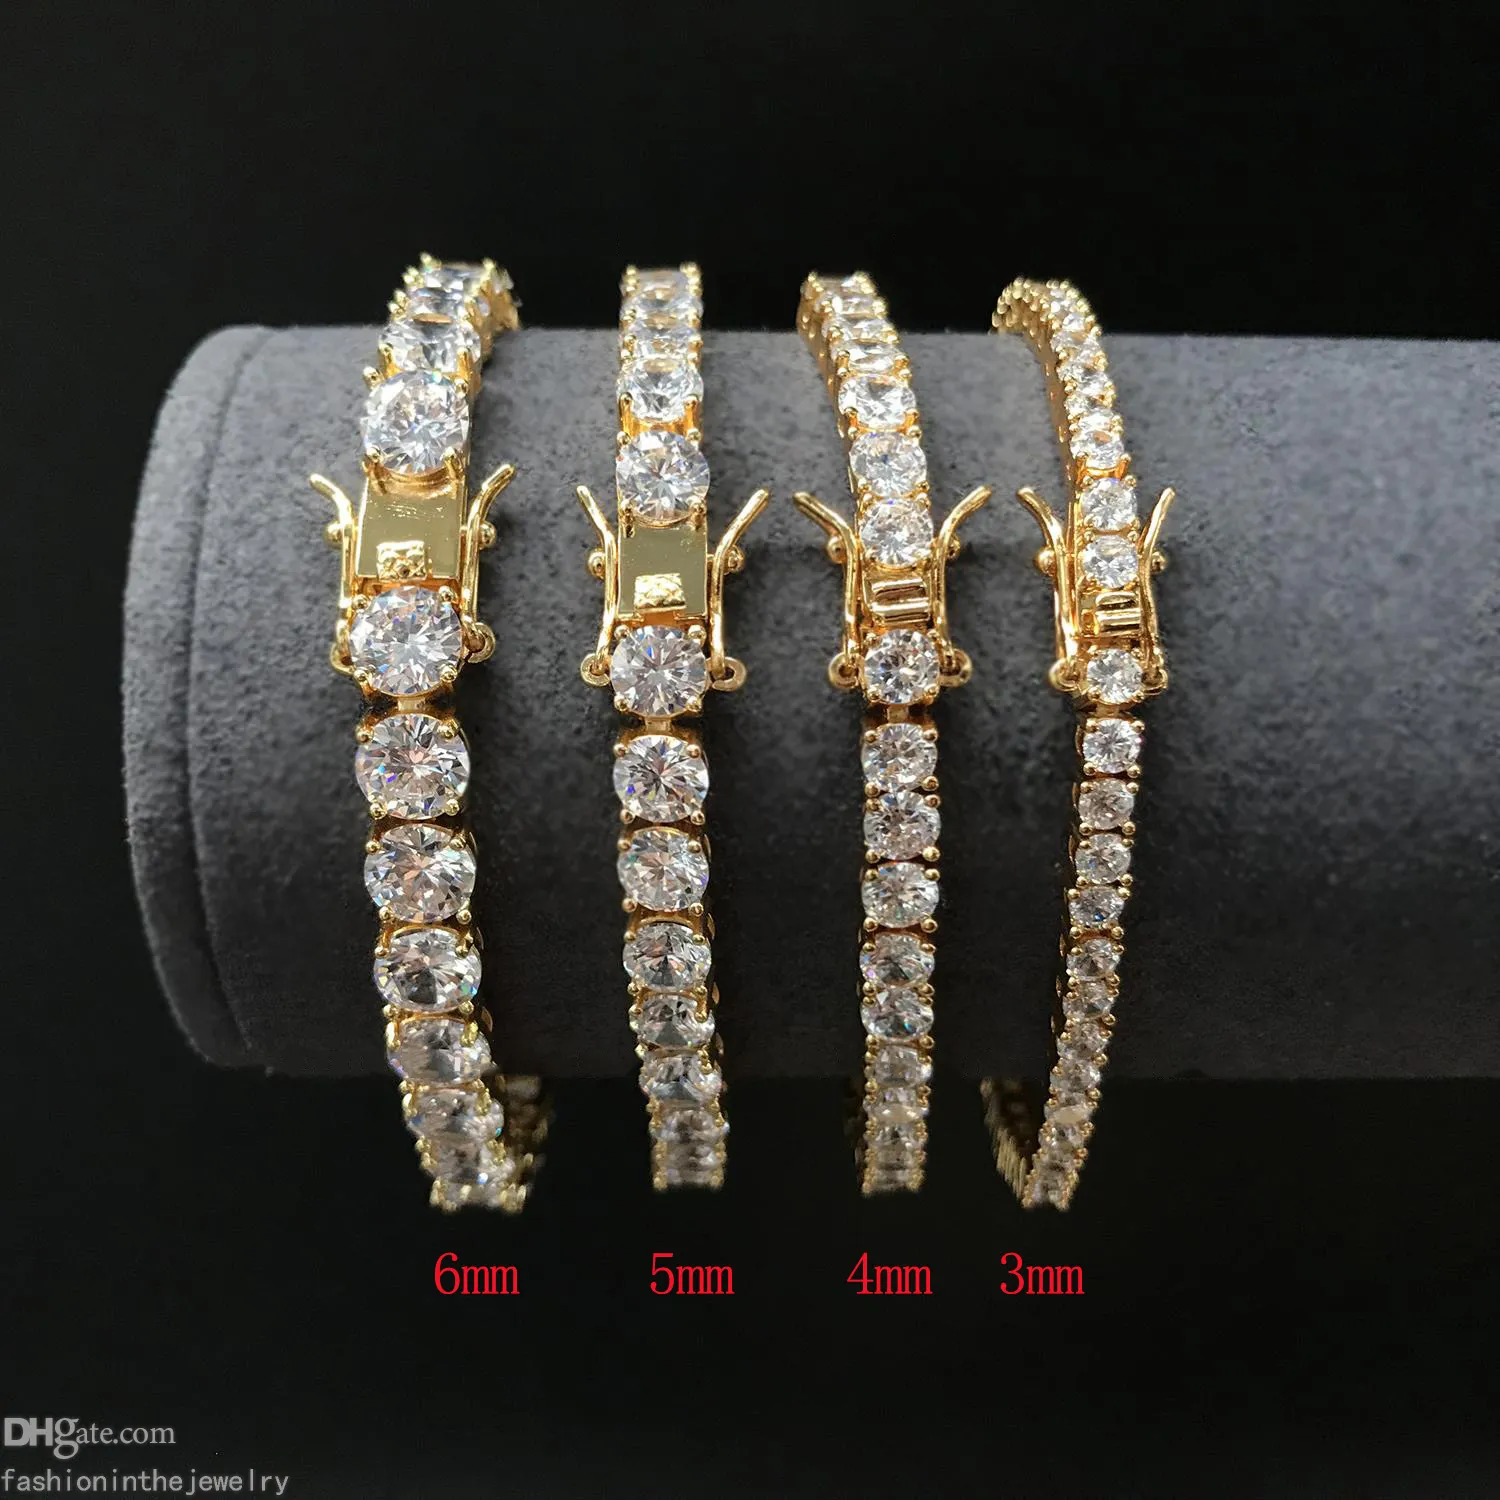 Tennis Designer Armband Diamant Luxus Schmuck Geschenk 3 4 5 6 mm 7 8 Zoll Mode Moissanit Weißgold Armbänder für Männer Erwachsene Hip289g